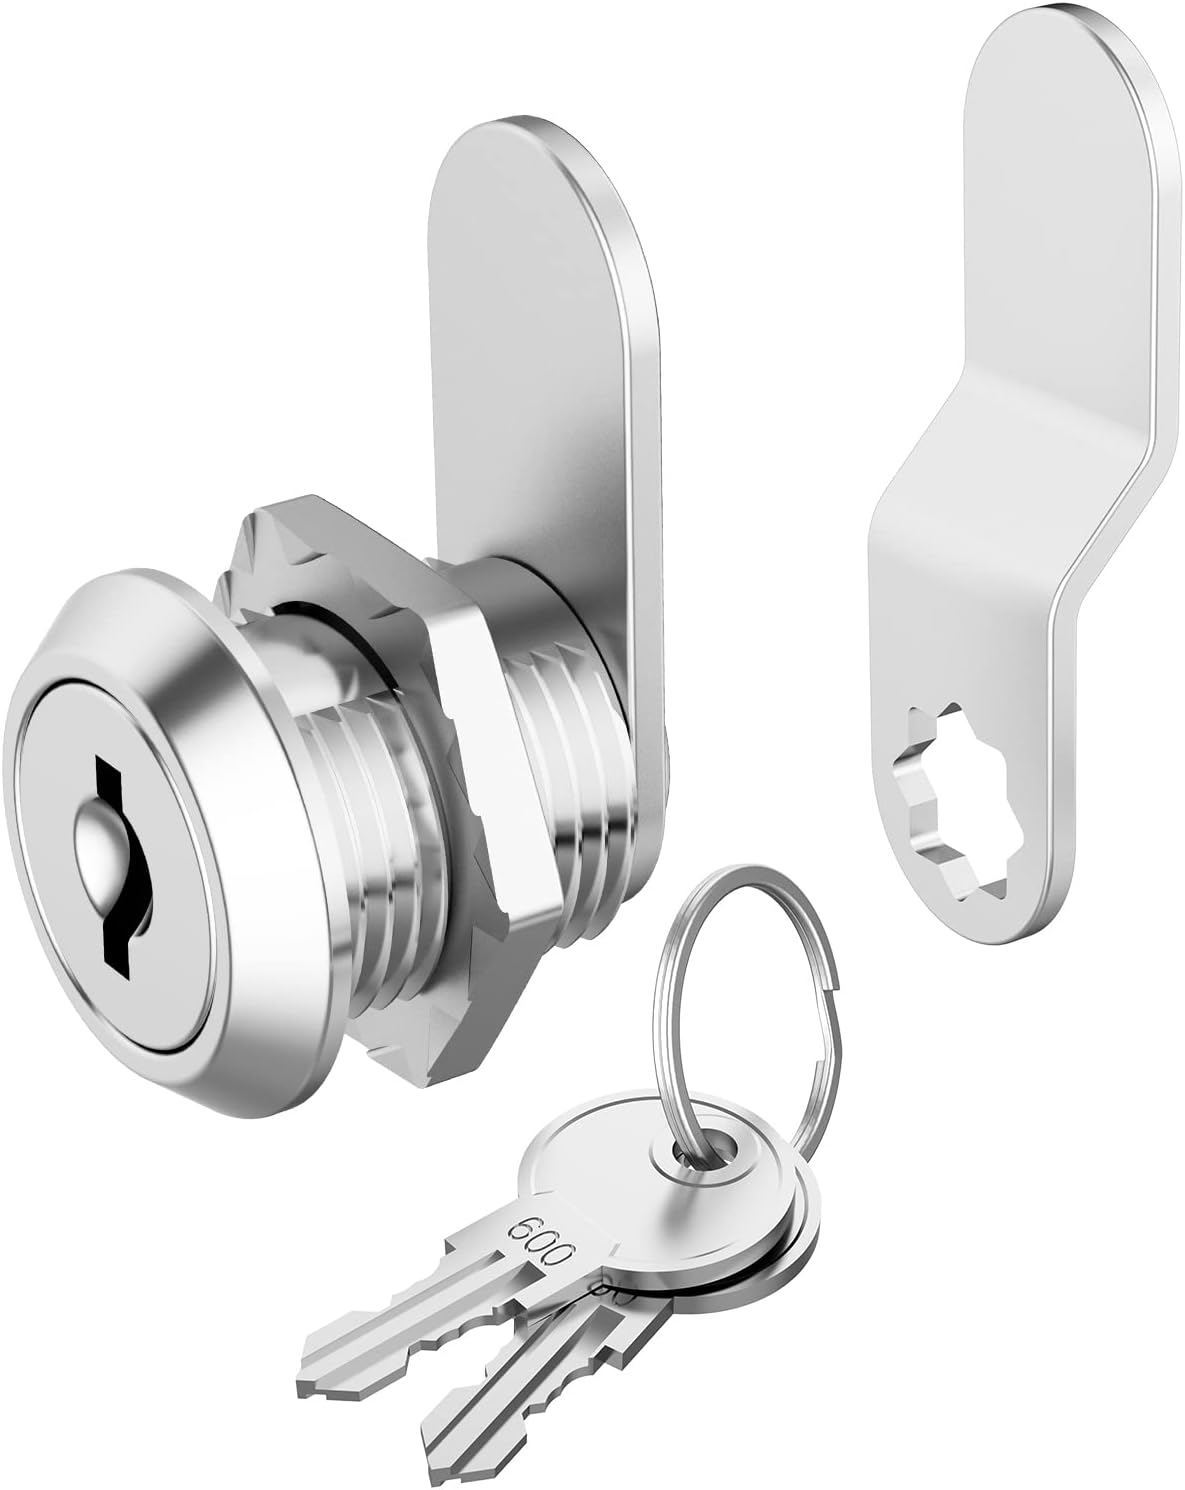 Hecfu 1 Pack Cabinet Locks with Keys, 5/8 Cam Lock keyed Alike